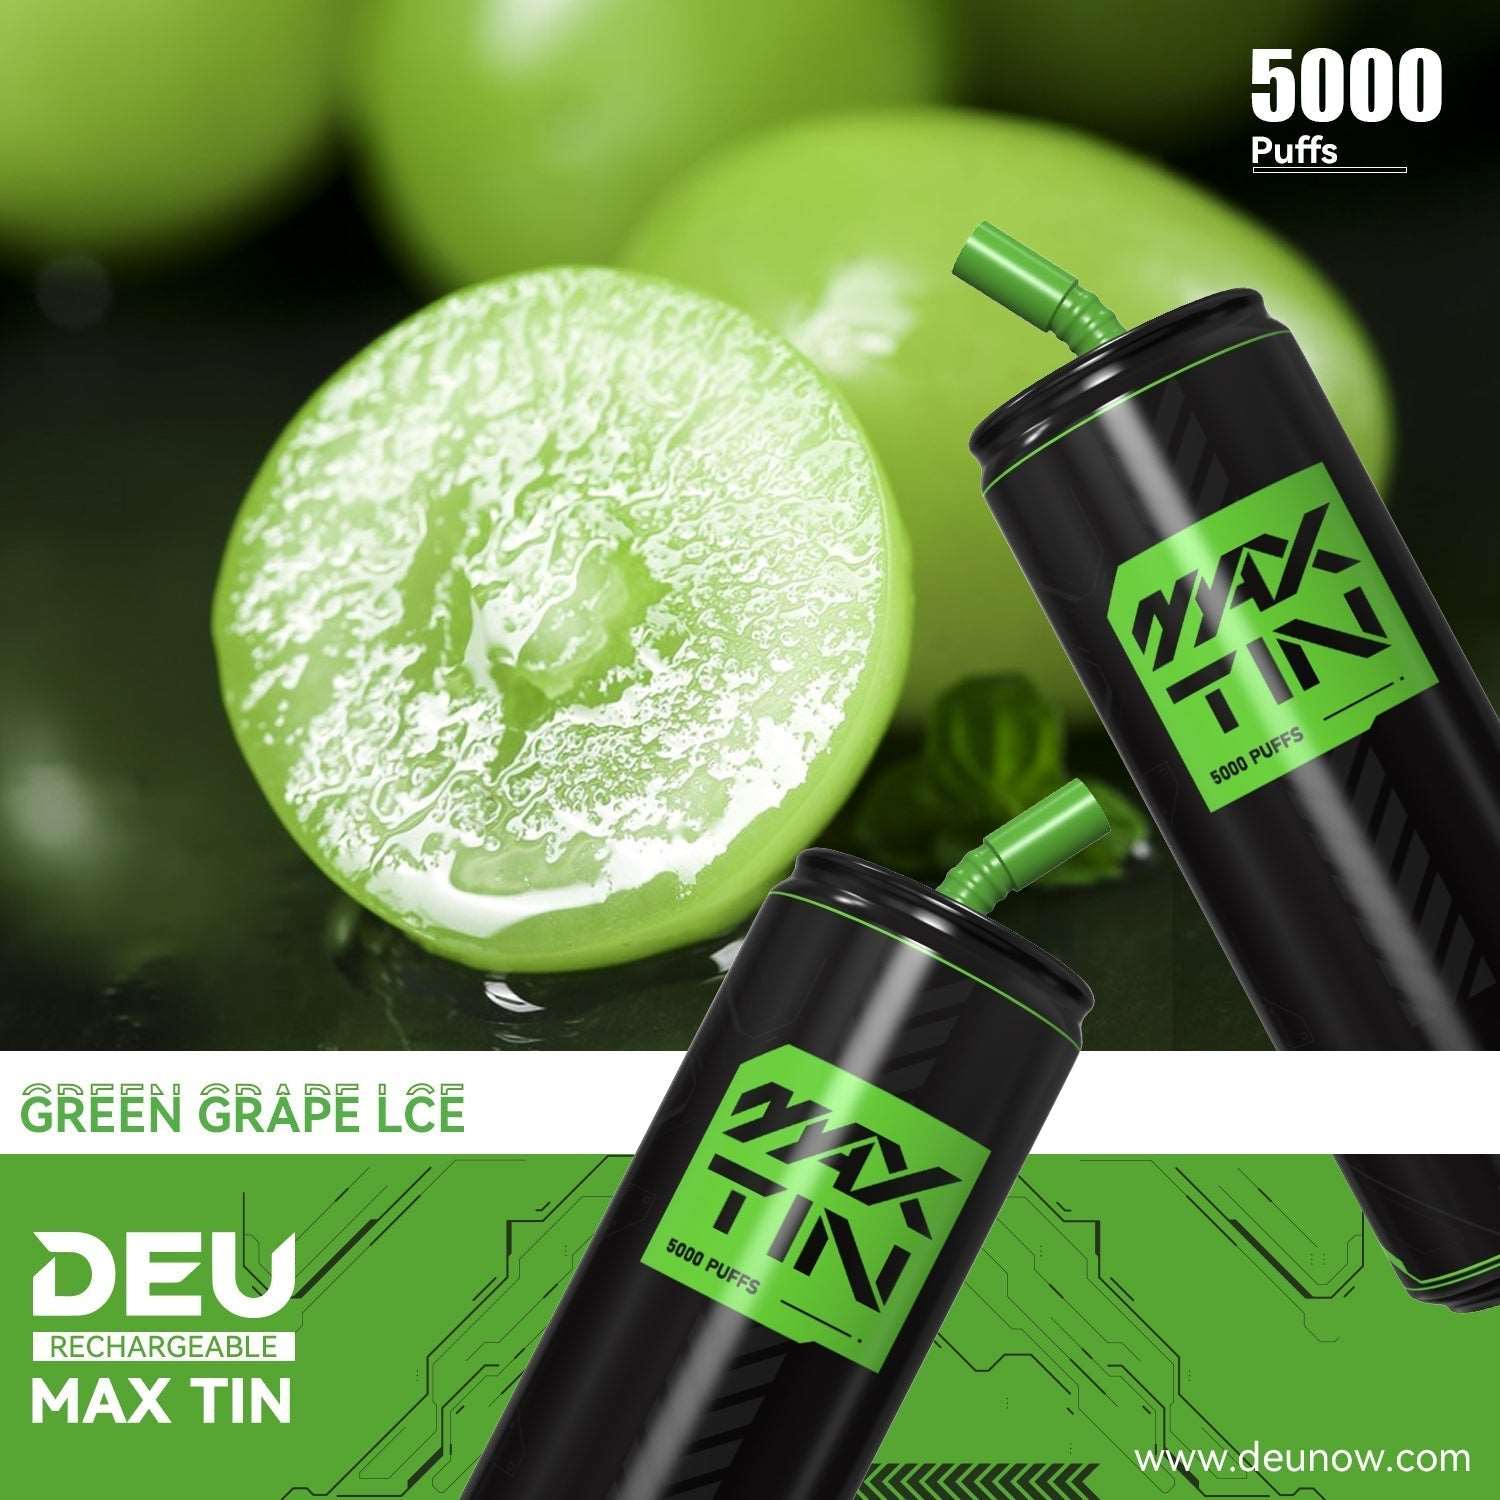 DEU MAX TIN - Green Grape Ice